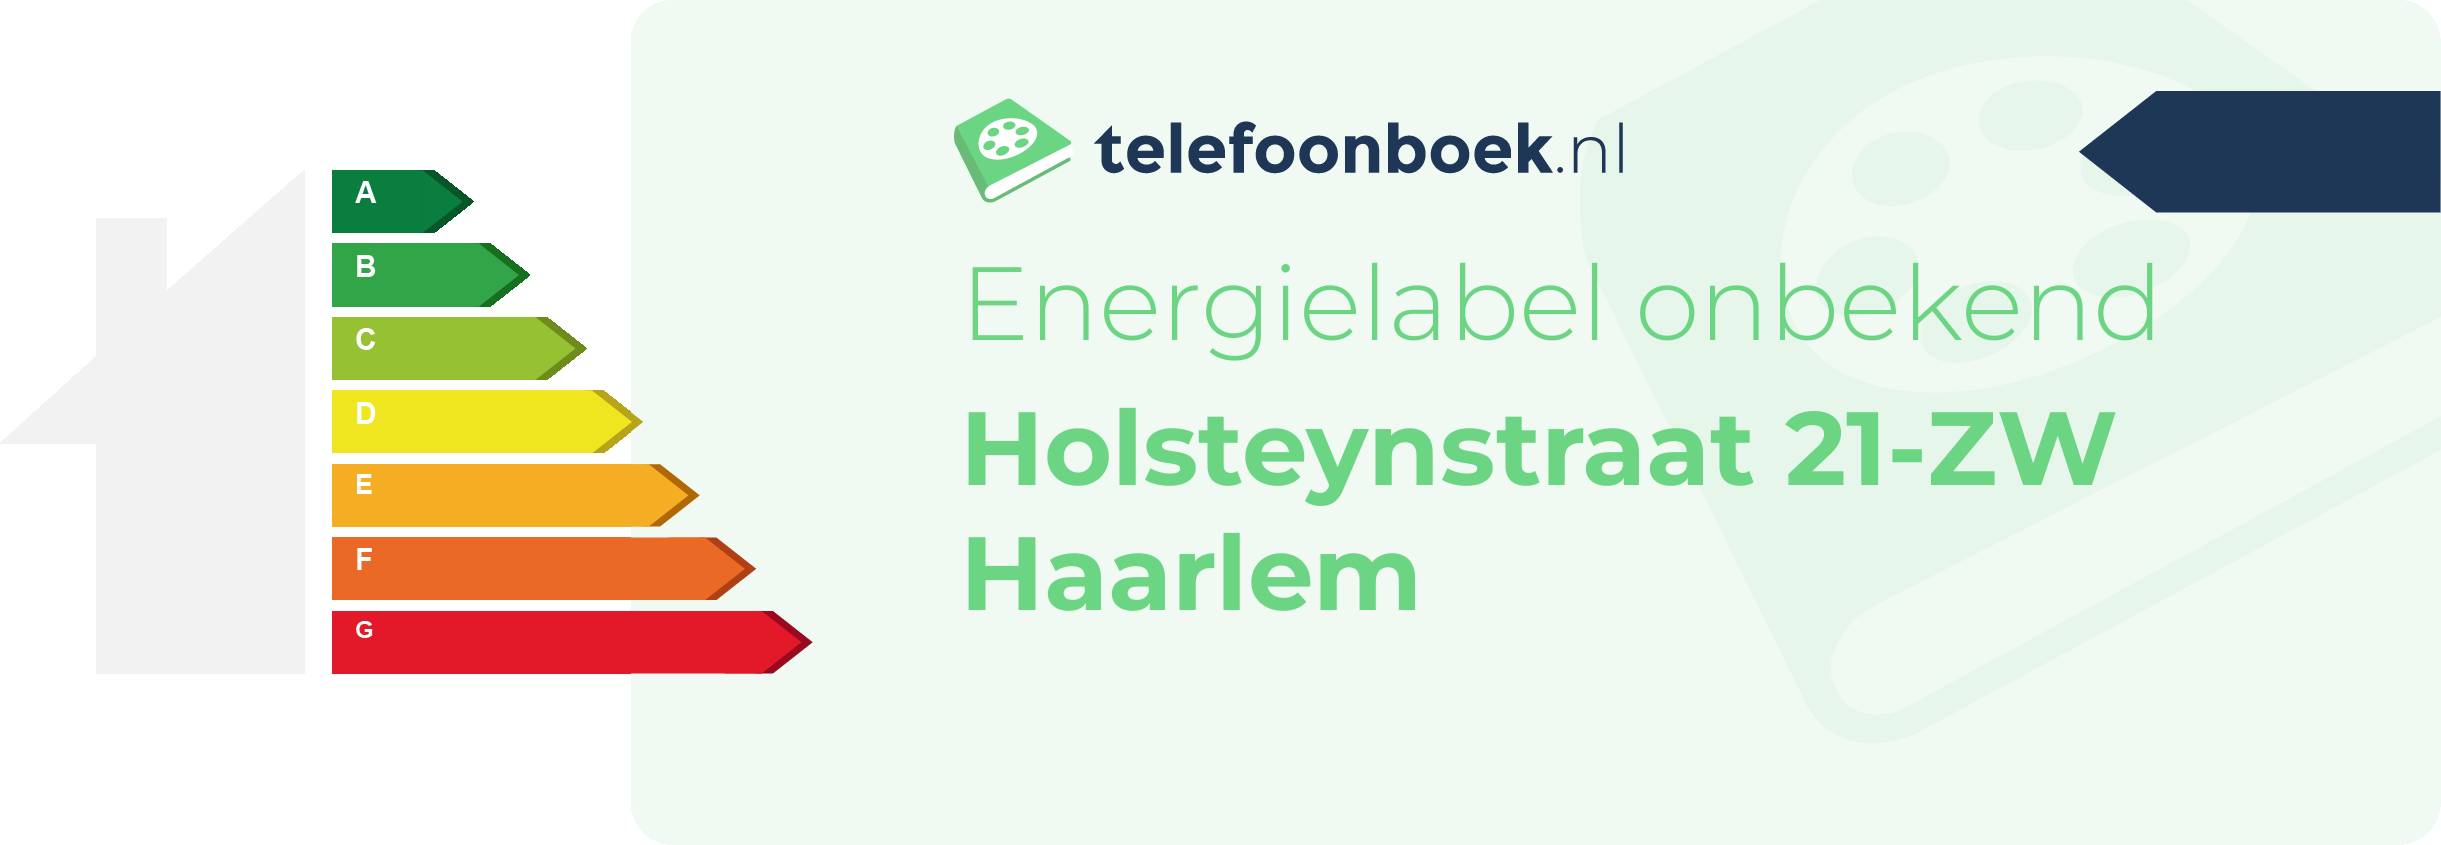 Energielabel Holsteynstraat 21-ZW Haarlem